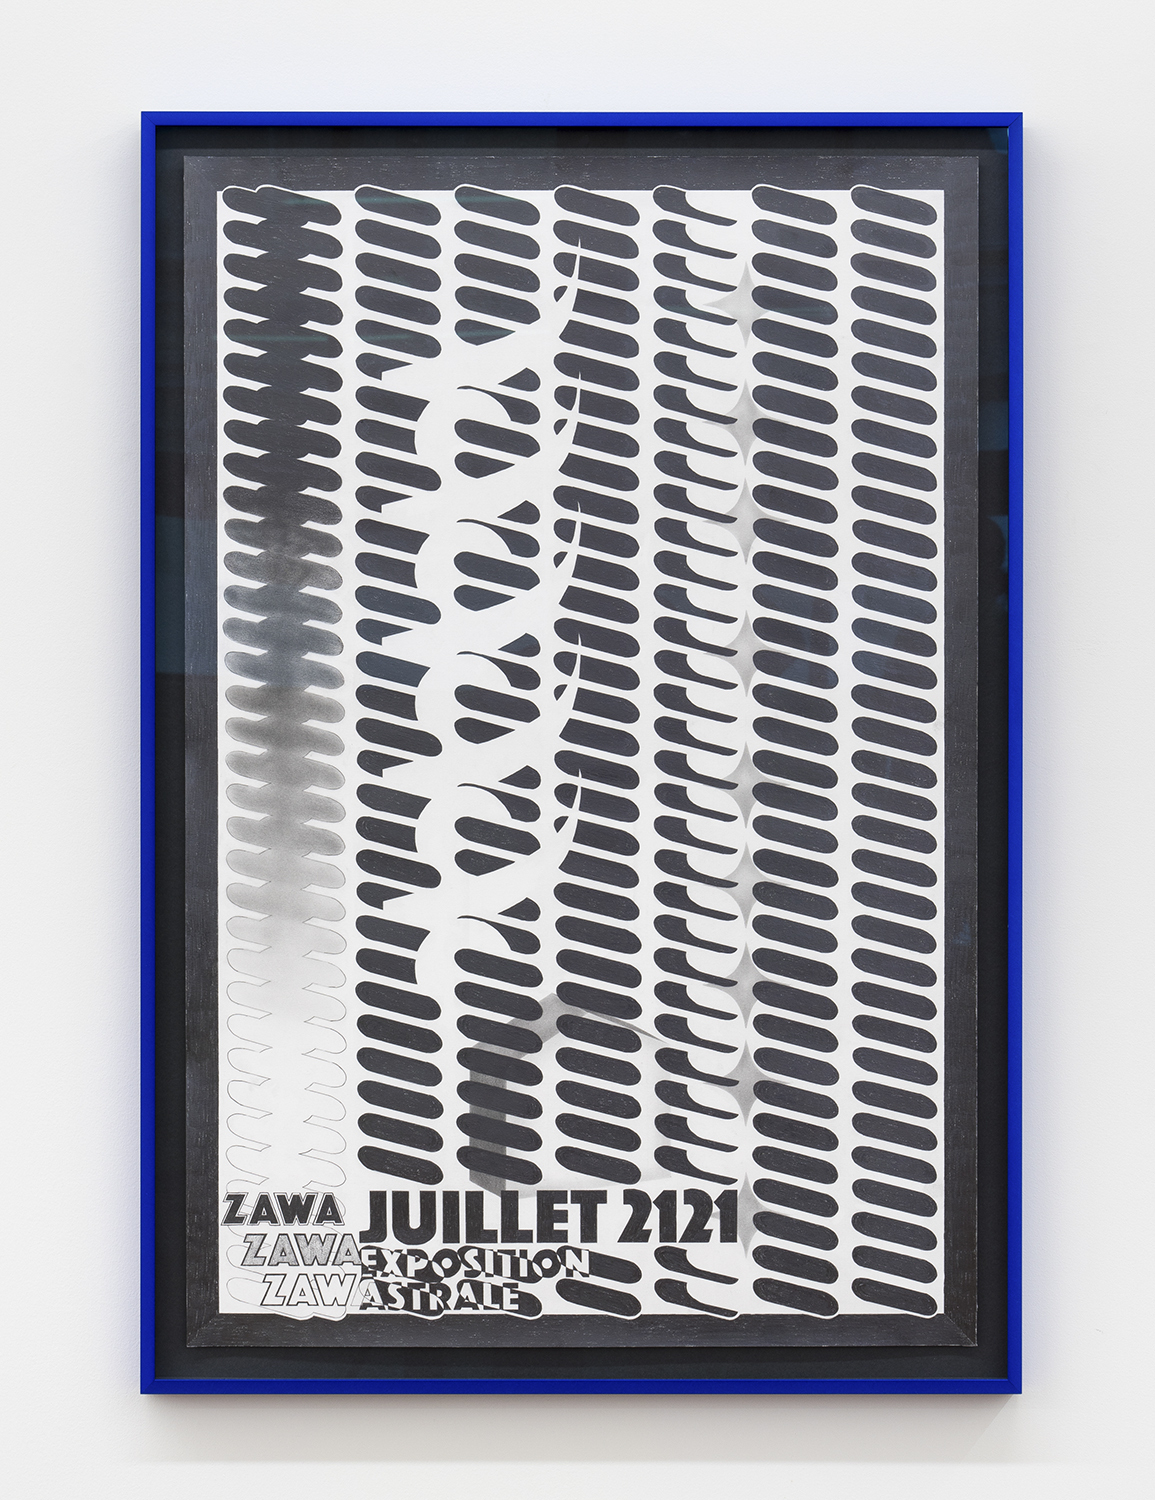 Philippe Caron Lefebvre, Zawa Zawa, 2021, graphite on paper, 91.4 x 61 cm